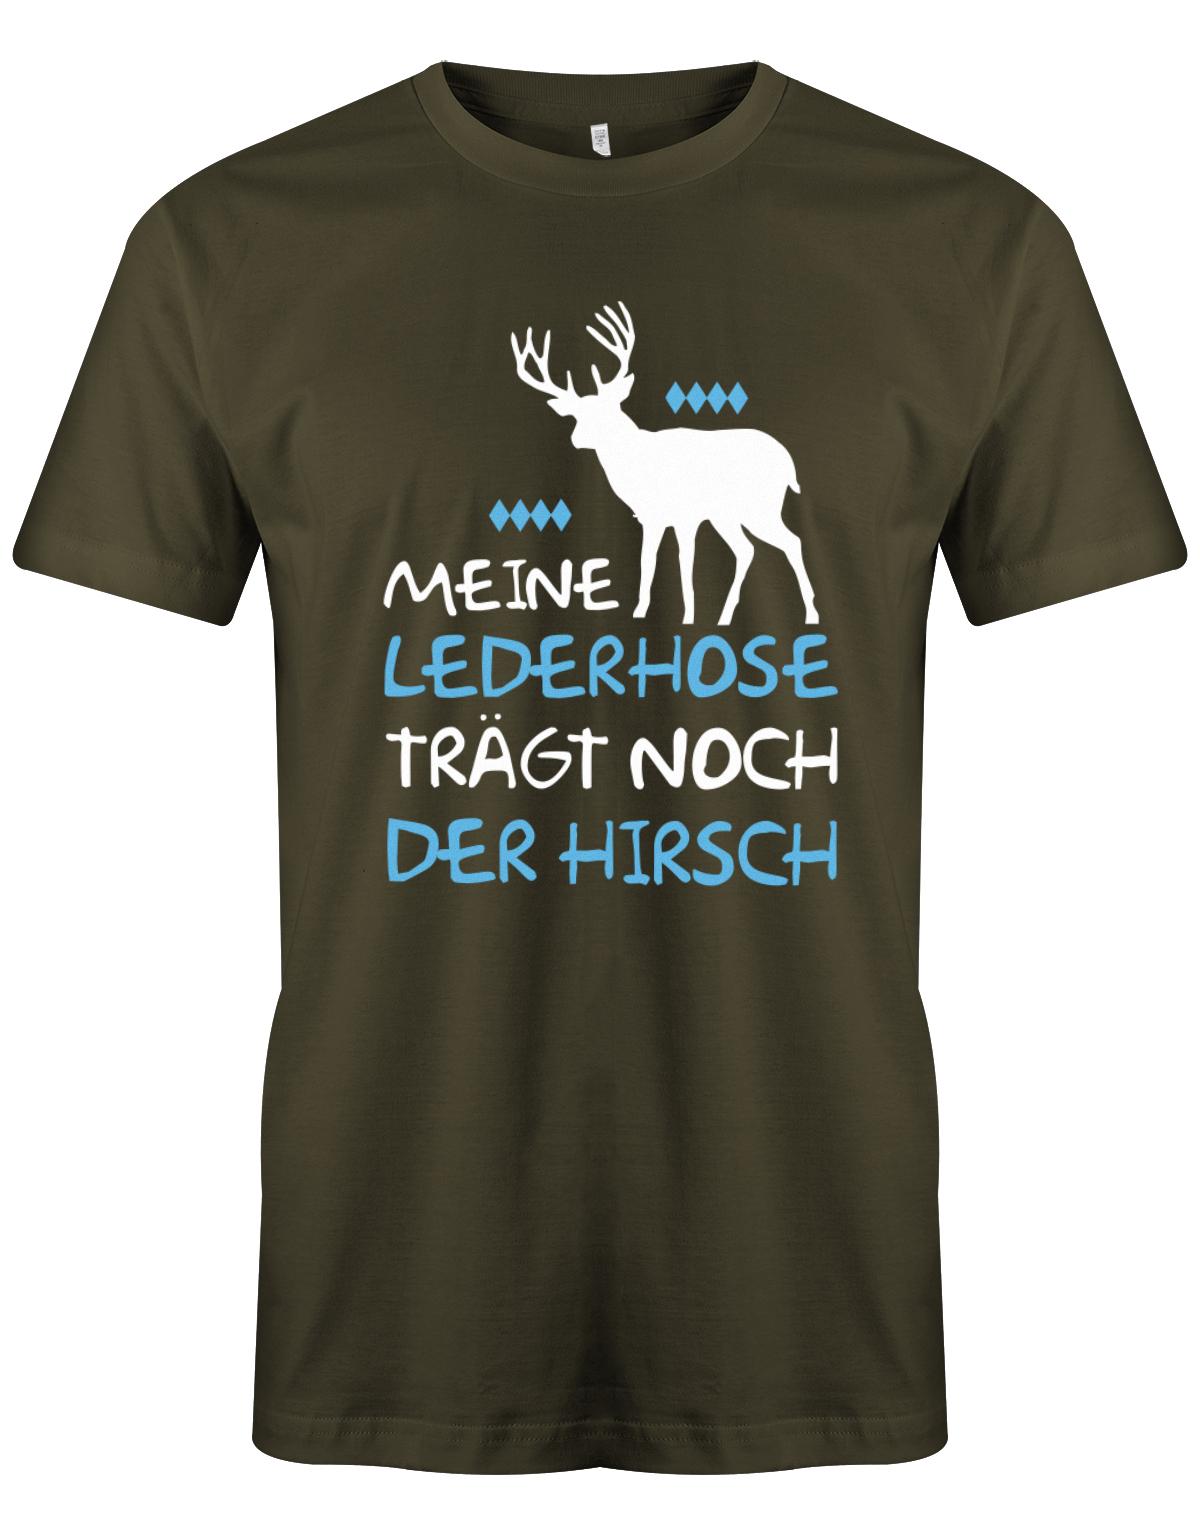 Meine-lederhose-traegt-noch-der-Hirsch-Oktoberfest-Herren-Shirt-Army